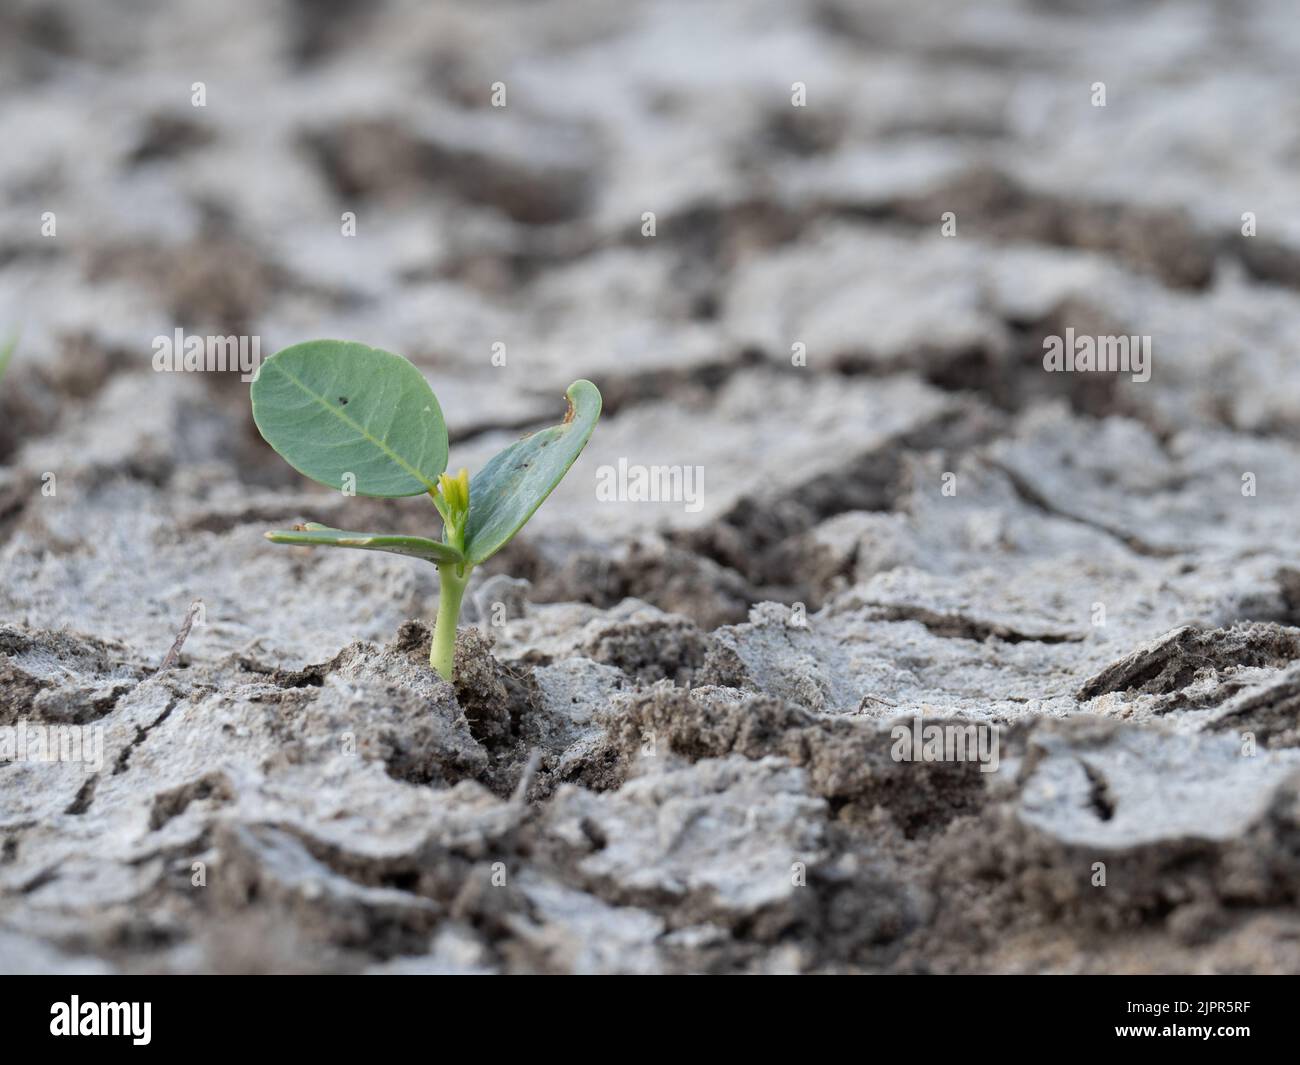 Gros plan d'une germination de plantules dans une terre fissurée pendant une sécheresse au Texas. Photographié avec une mise au point sélective. Banque D'Images